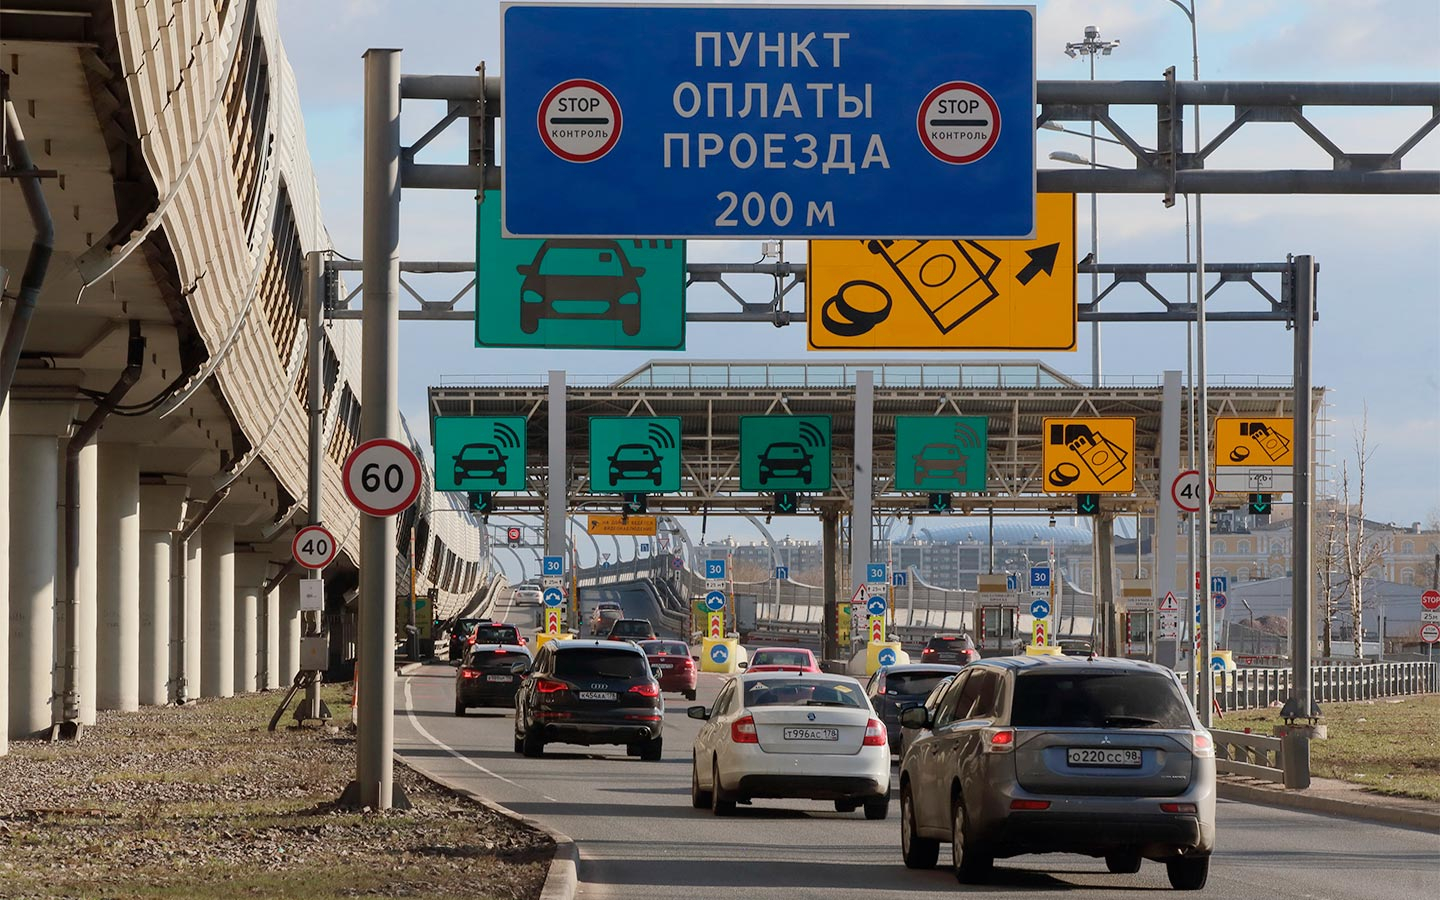 Действует ли транспондер зсд на других платных дорогах россии